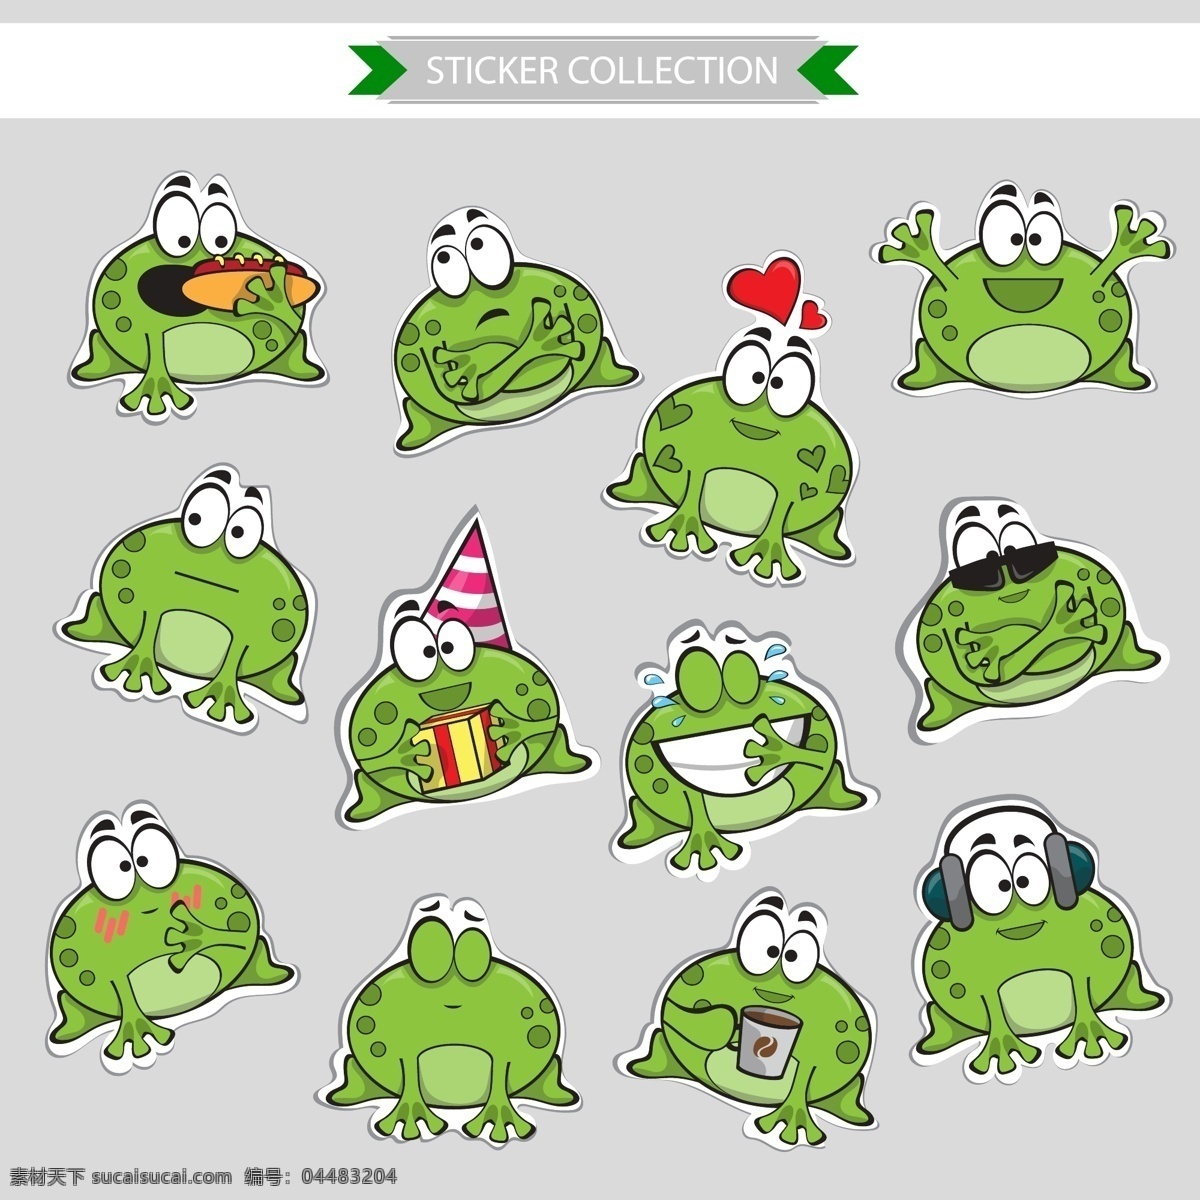 可爱的绿豆蛙 可爱 儿童画 动物 绿豆蛙 青蛙